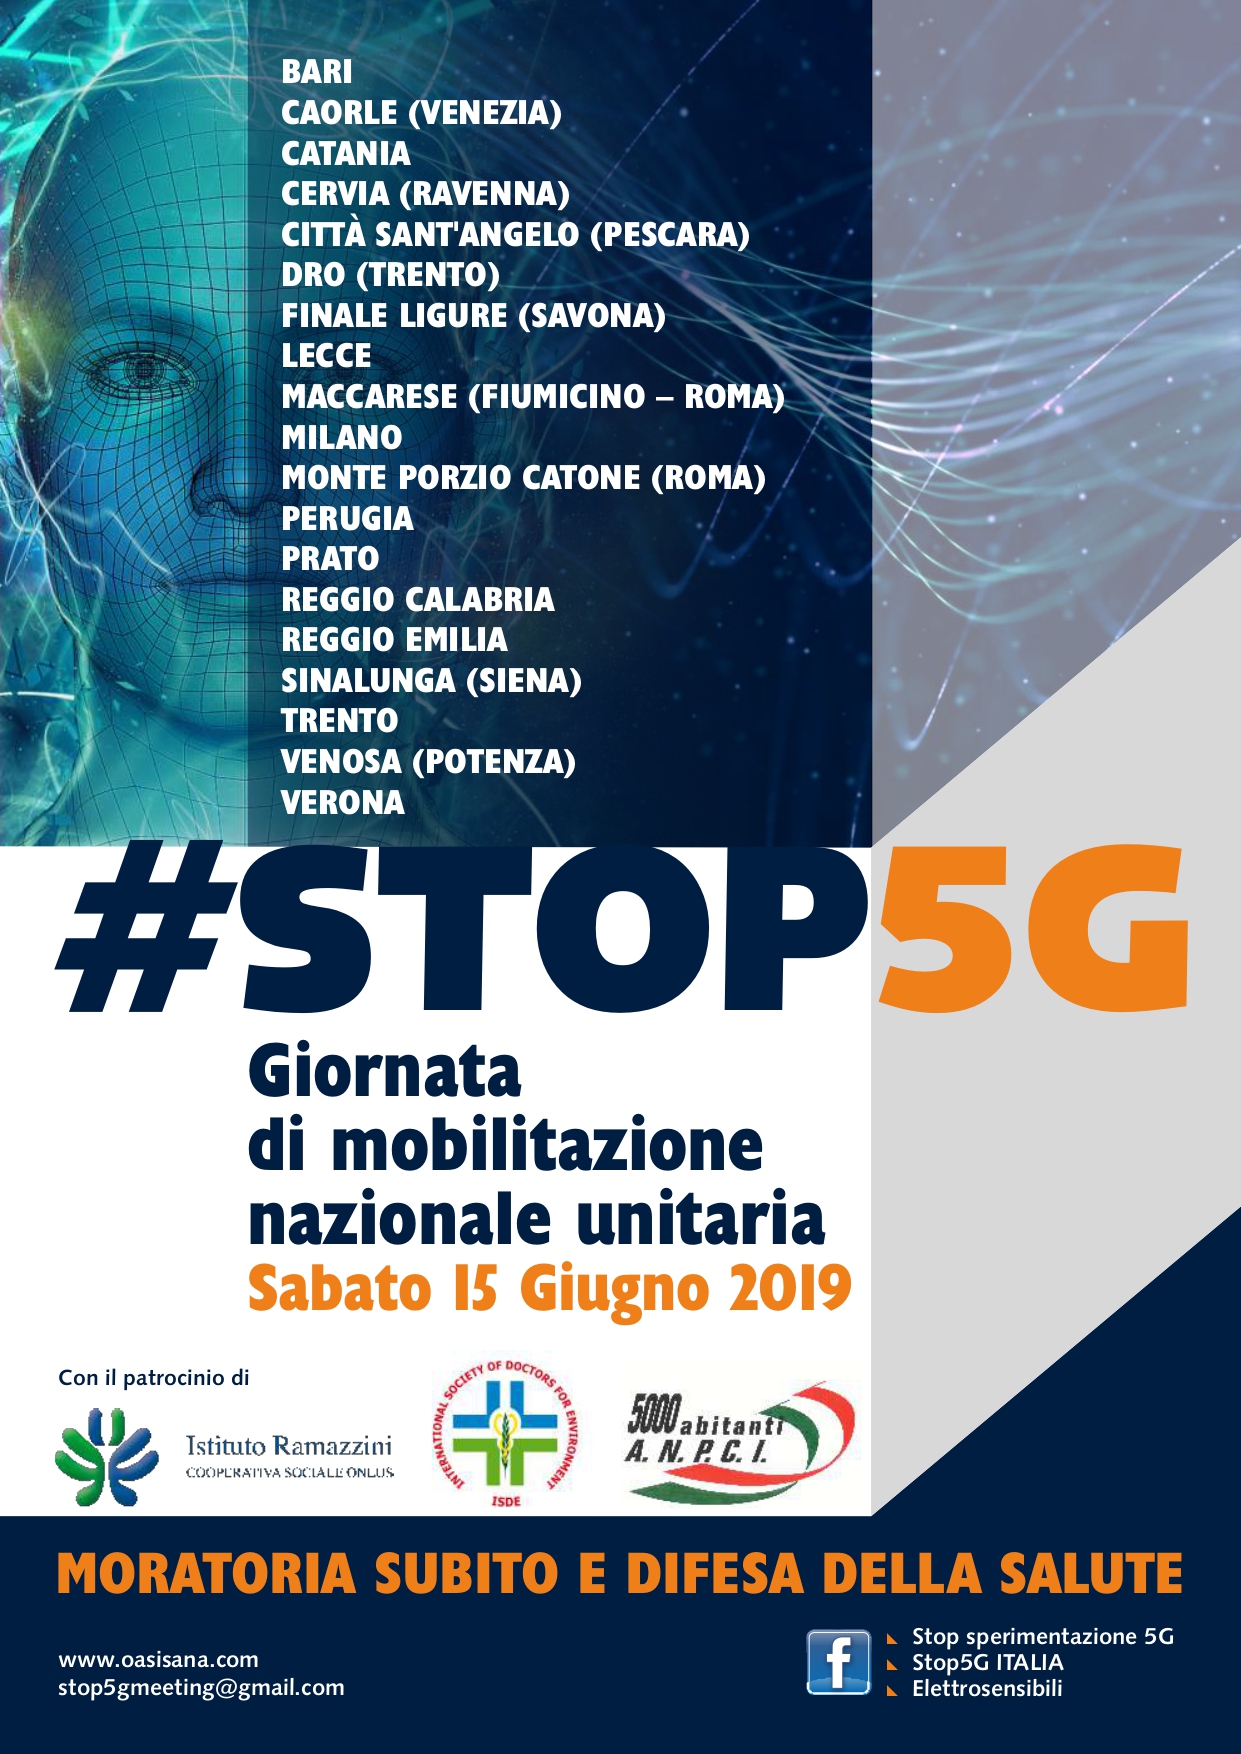 Sabato 15 Giugno: Giornata di mobilitazione nazionale promossa dall’alleanza italiana Stop 5G